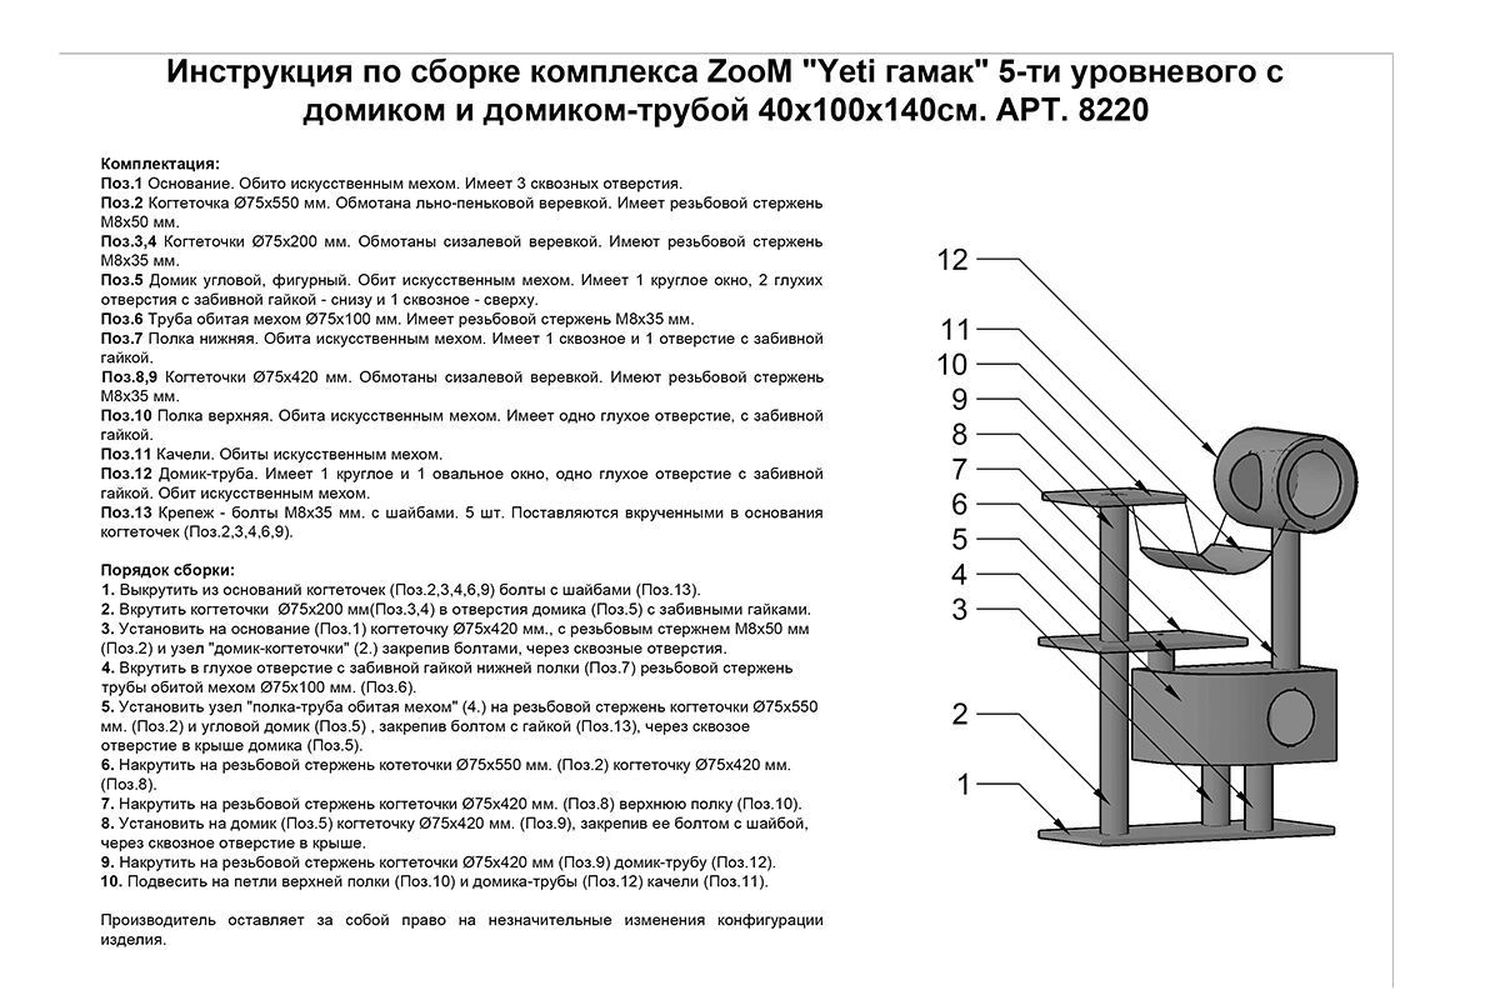 Фото Комплекс ZooM "Yeti гамак" 5-ти уровневый с домиком и домиком трубой 40*100*140 см 